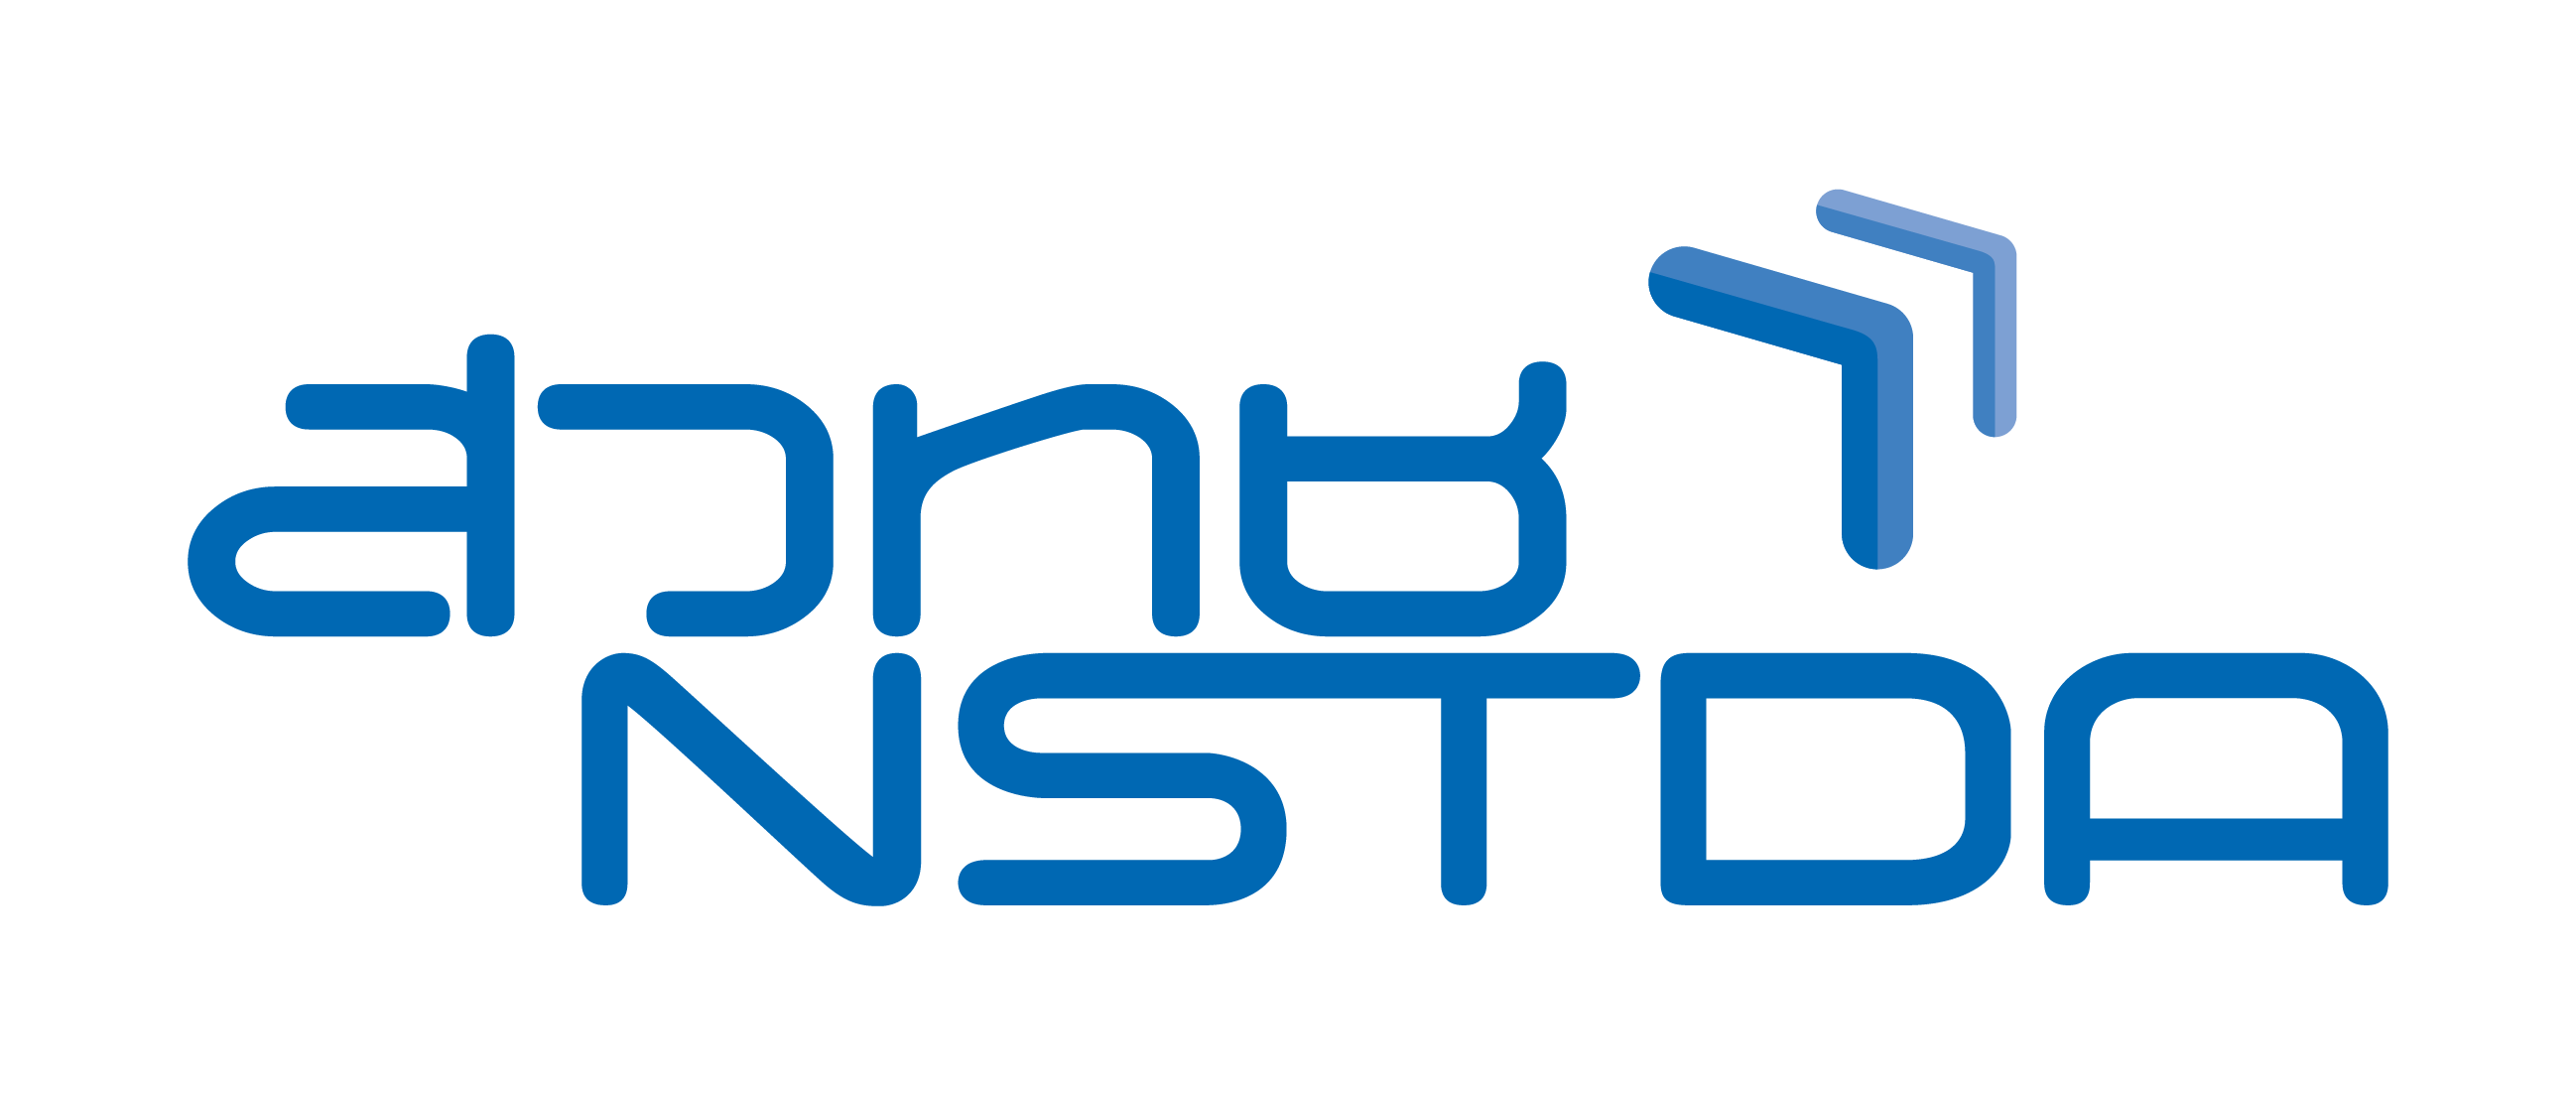 logo-nstda-202010